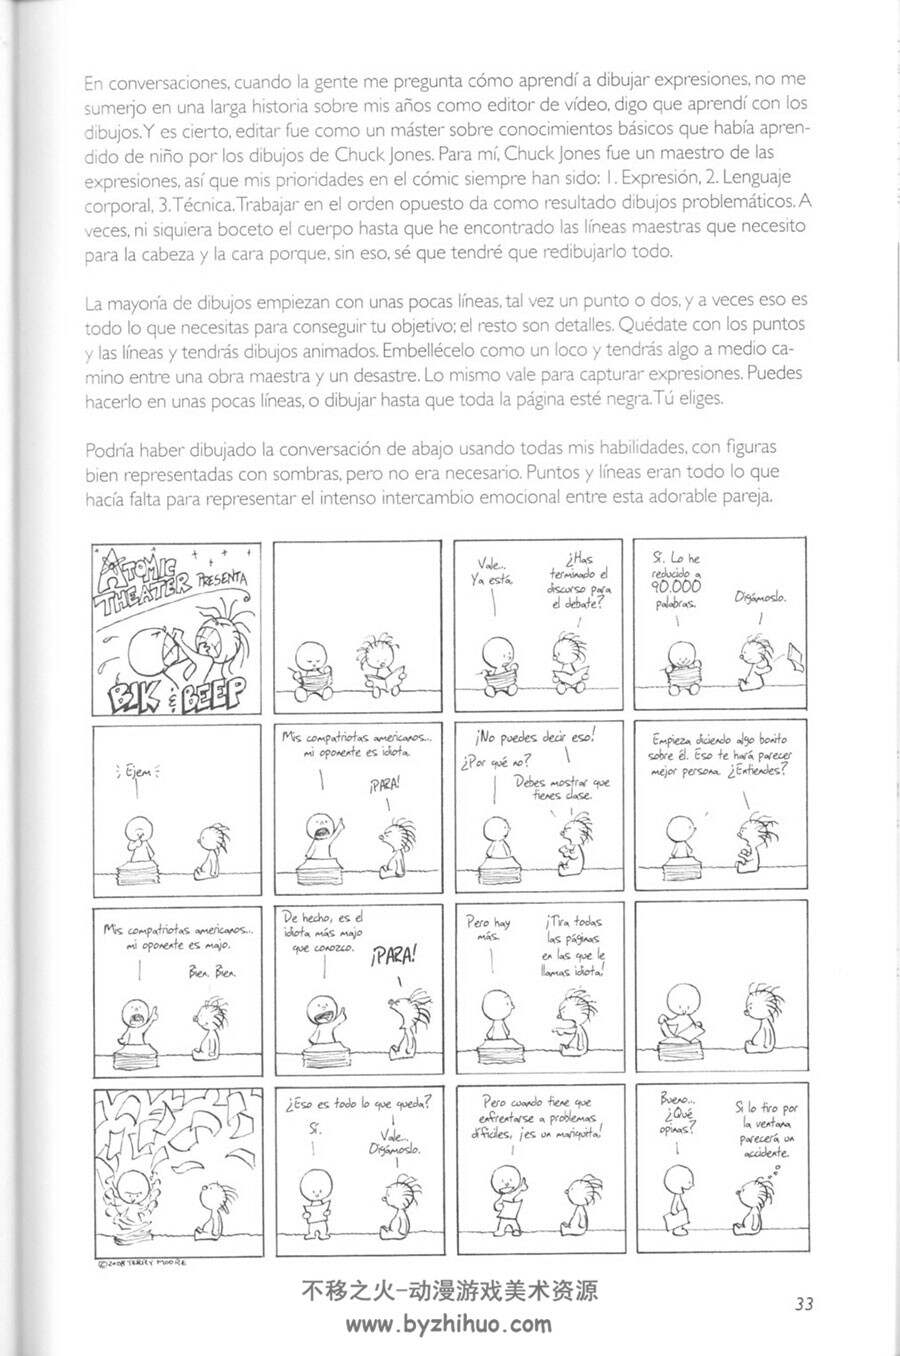 CÓMO DIBUJAR 漫画家Terry Moore 欧美漫画家角色绘制 西班牙语教程